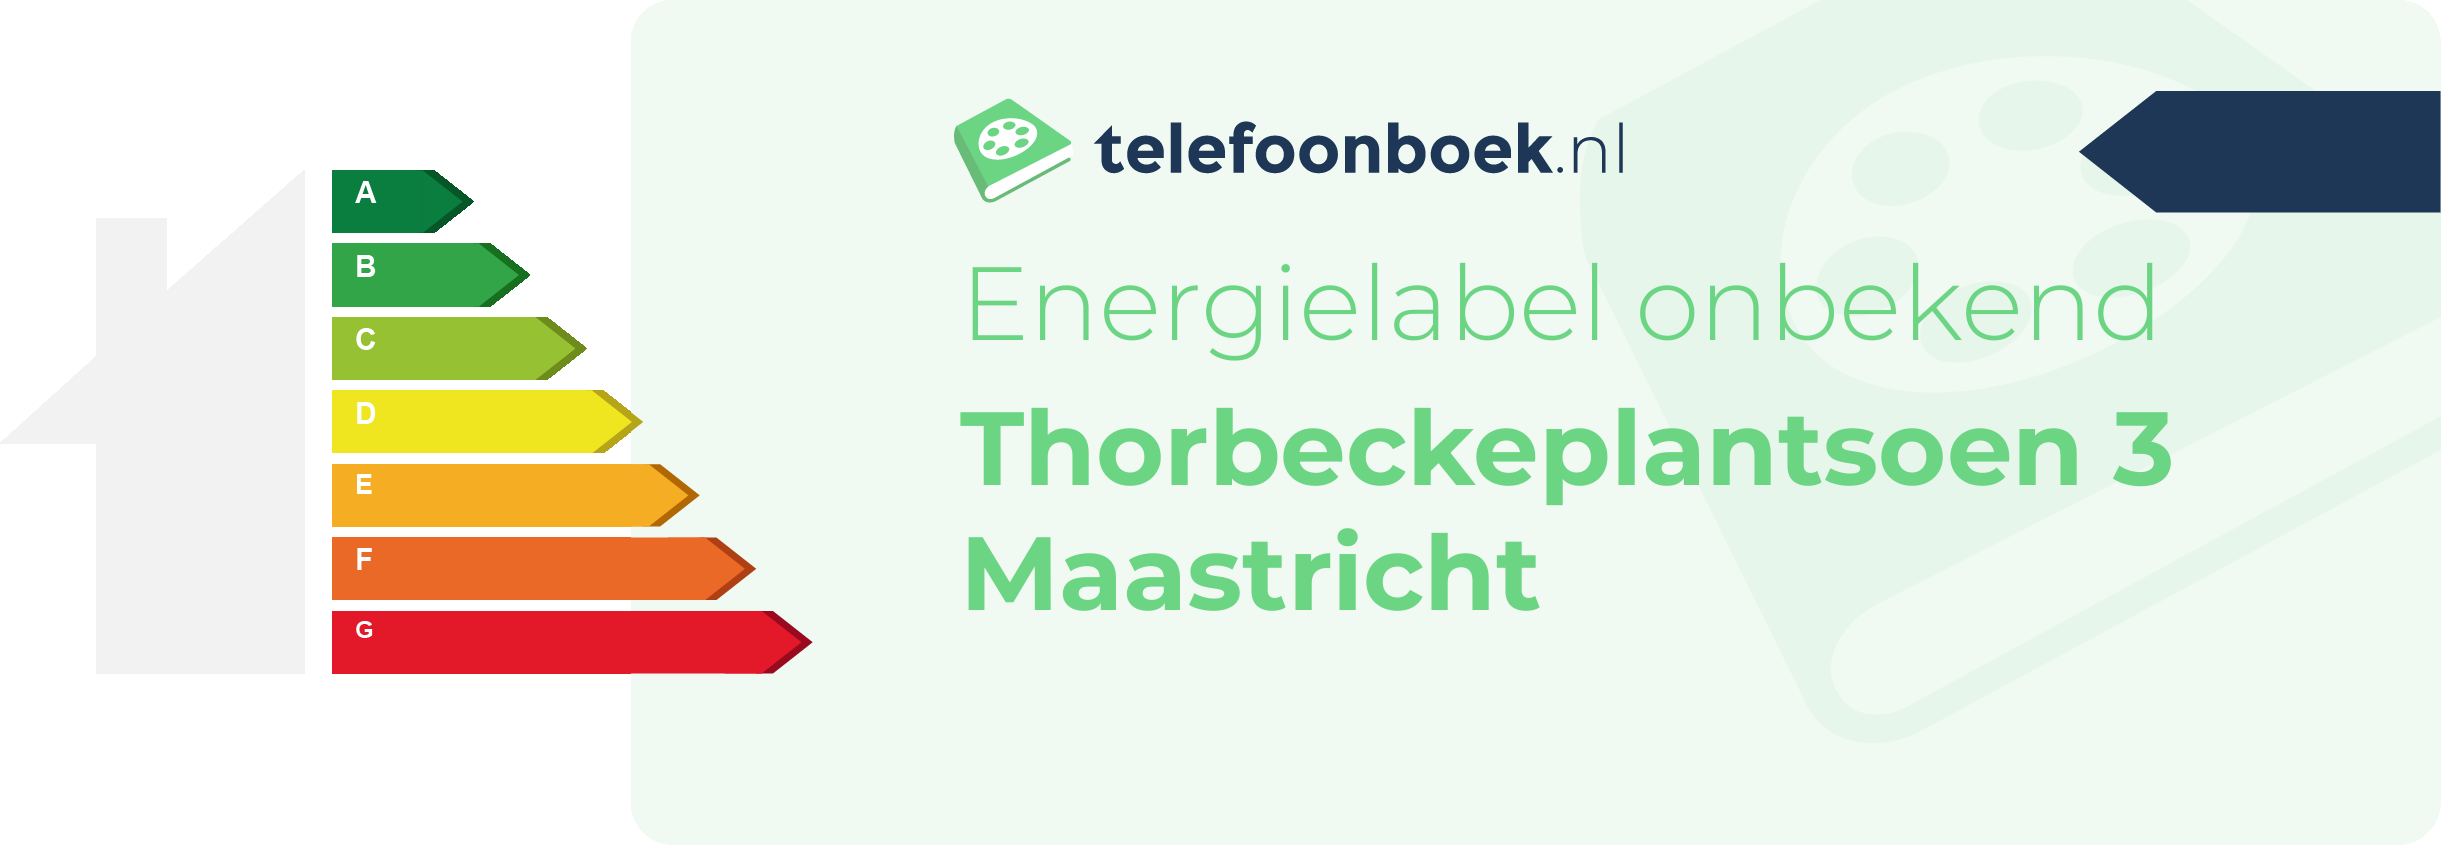 Energielabel Thorbeckeplantsoen 3 Maastricht